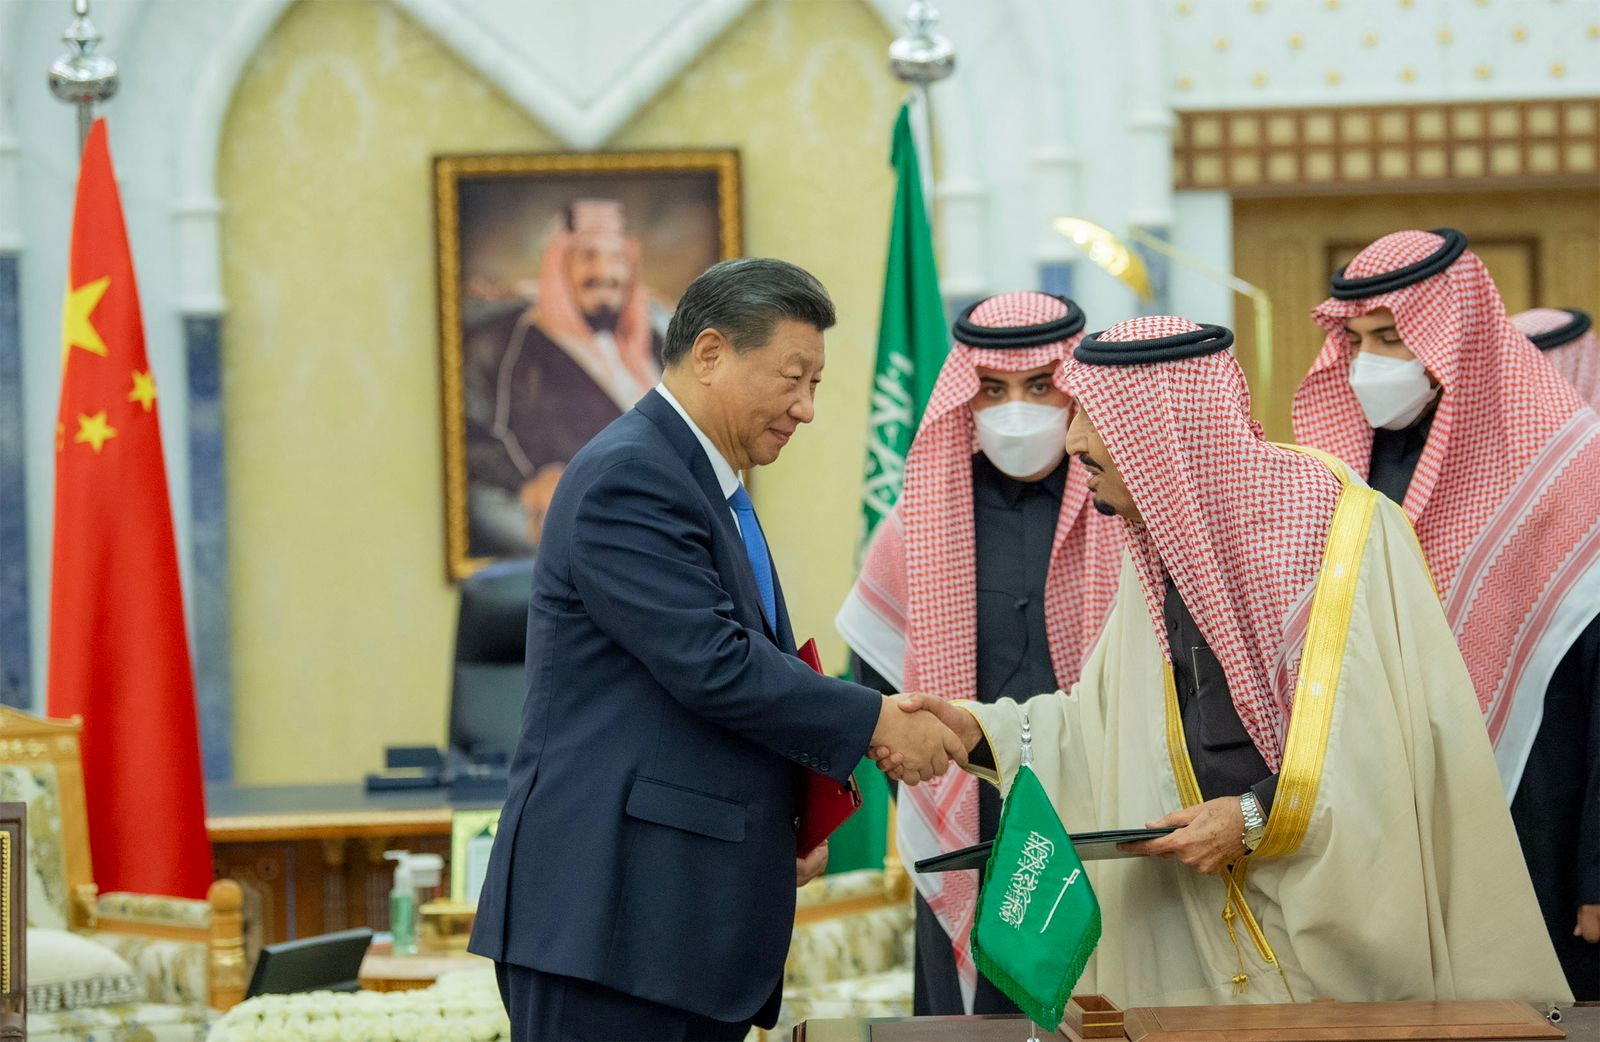 لا ، زيارة شي إلى الرياض لم تكن بسبب العلاقات الأمريكية السعودية السيئة.  إنه أكثر من ذلك بكثير.